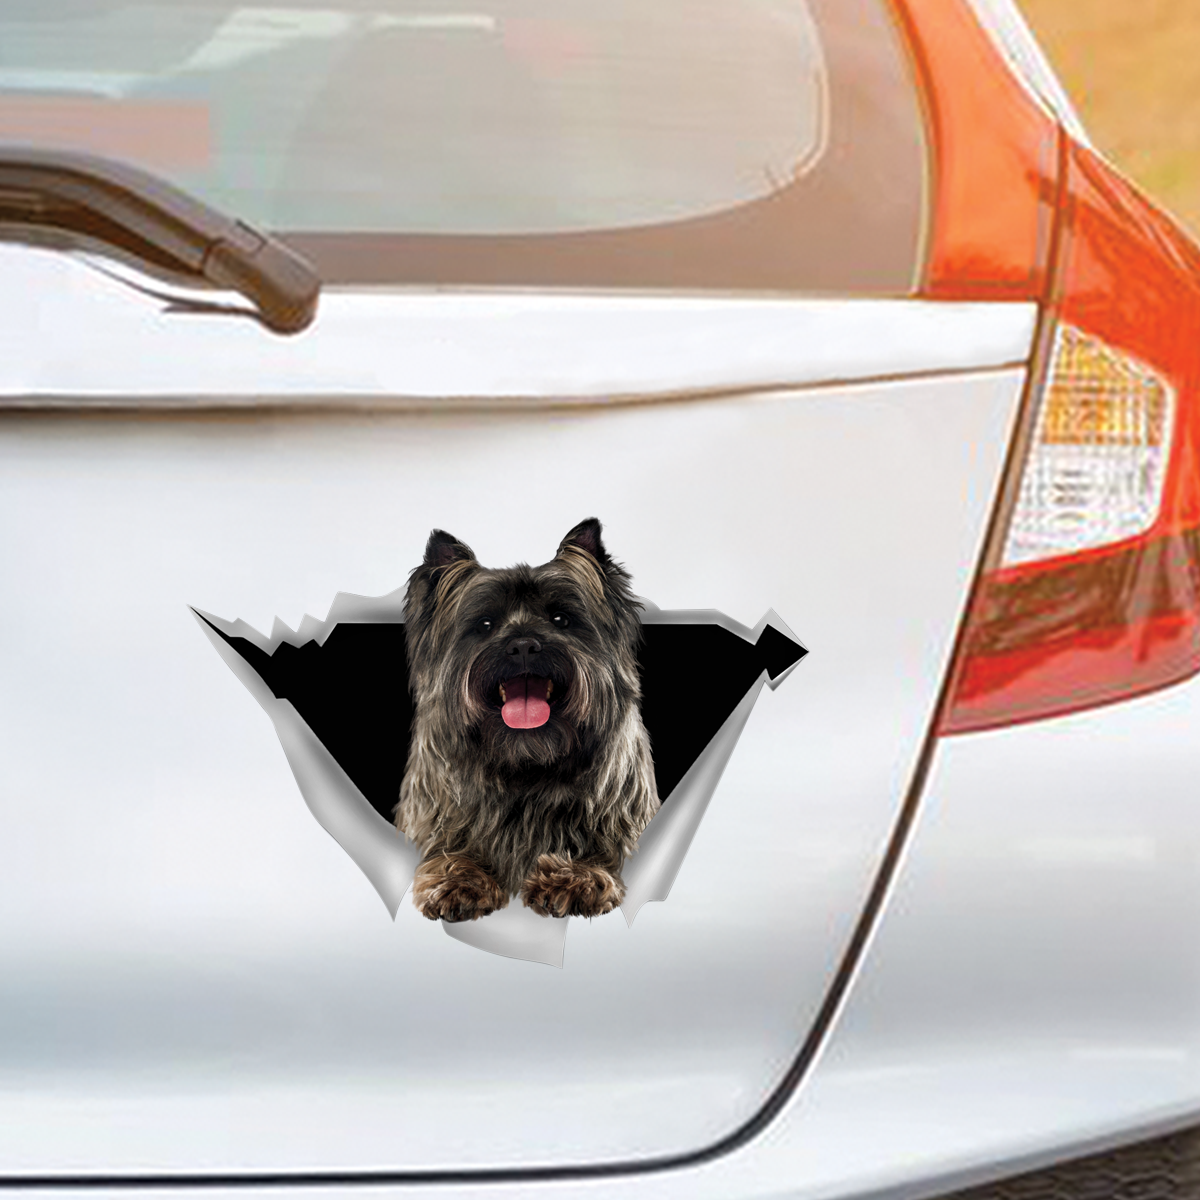 We Like Riding In Cars - Cairn Terrier Car/ Door/ Fridge/ Laptop Sticker V2